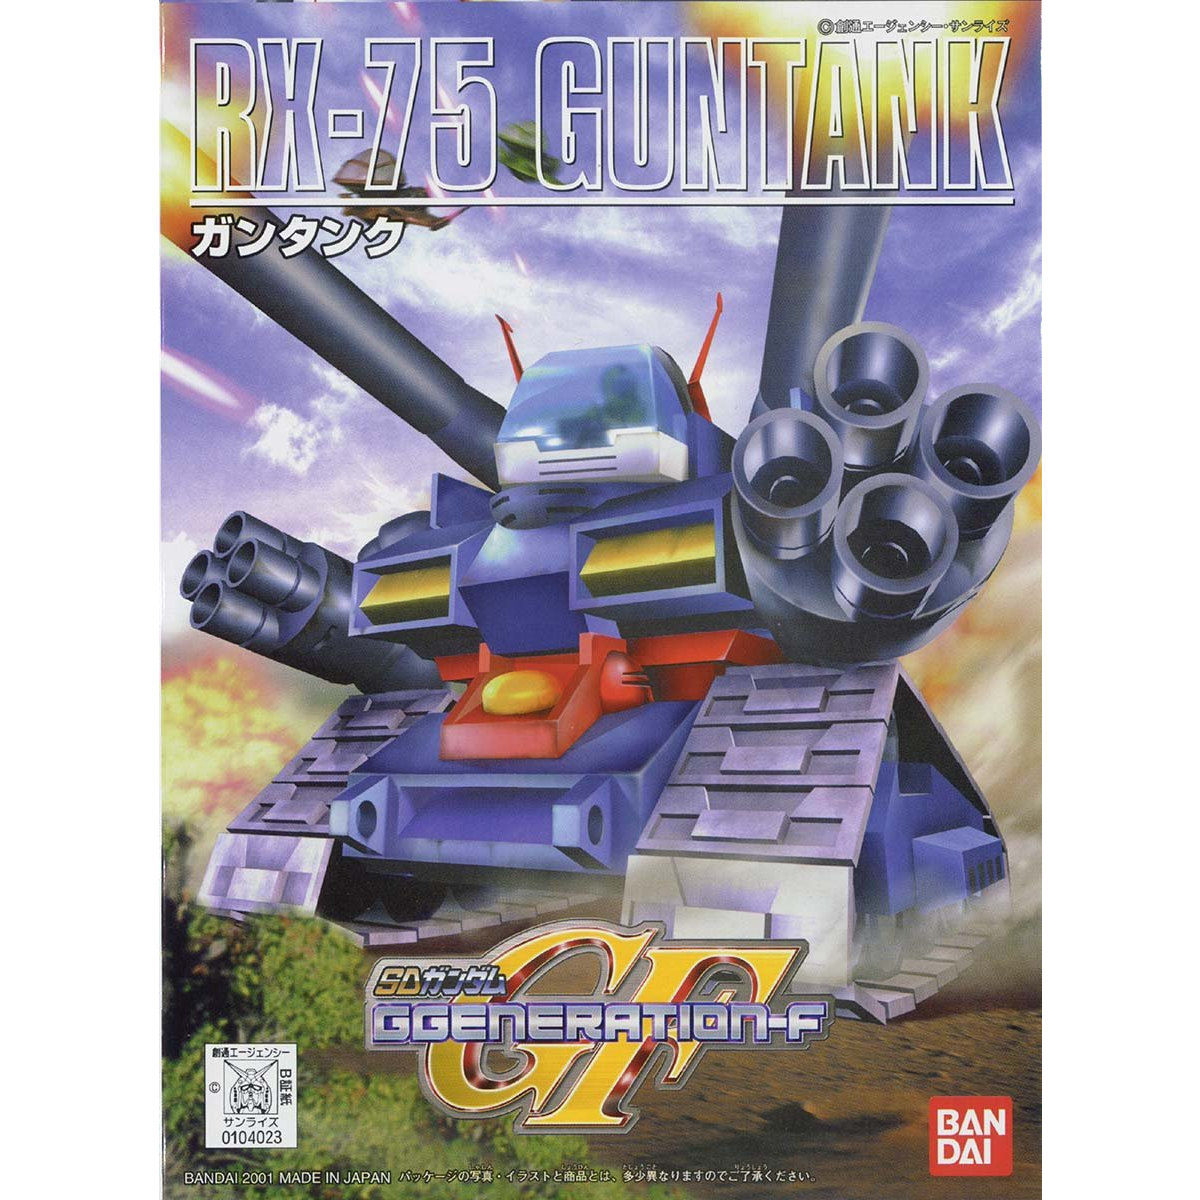 ＢＢ戦士２２１ ガンタンク | SDガンダムシリーズ フィギュア